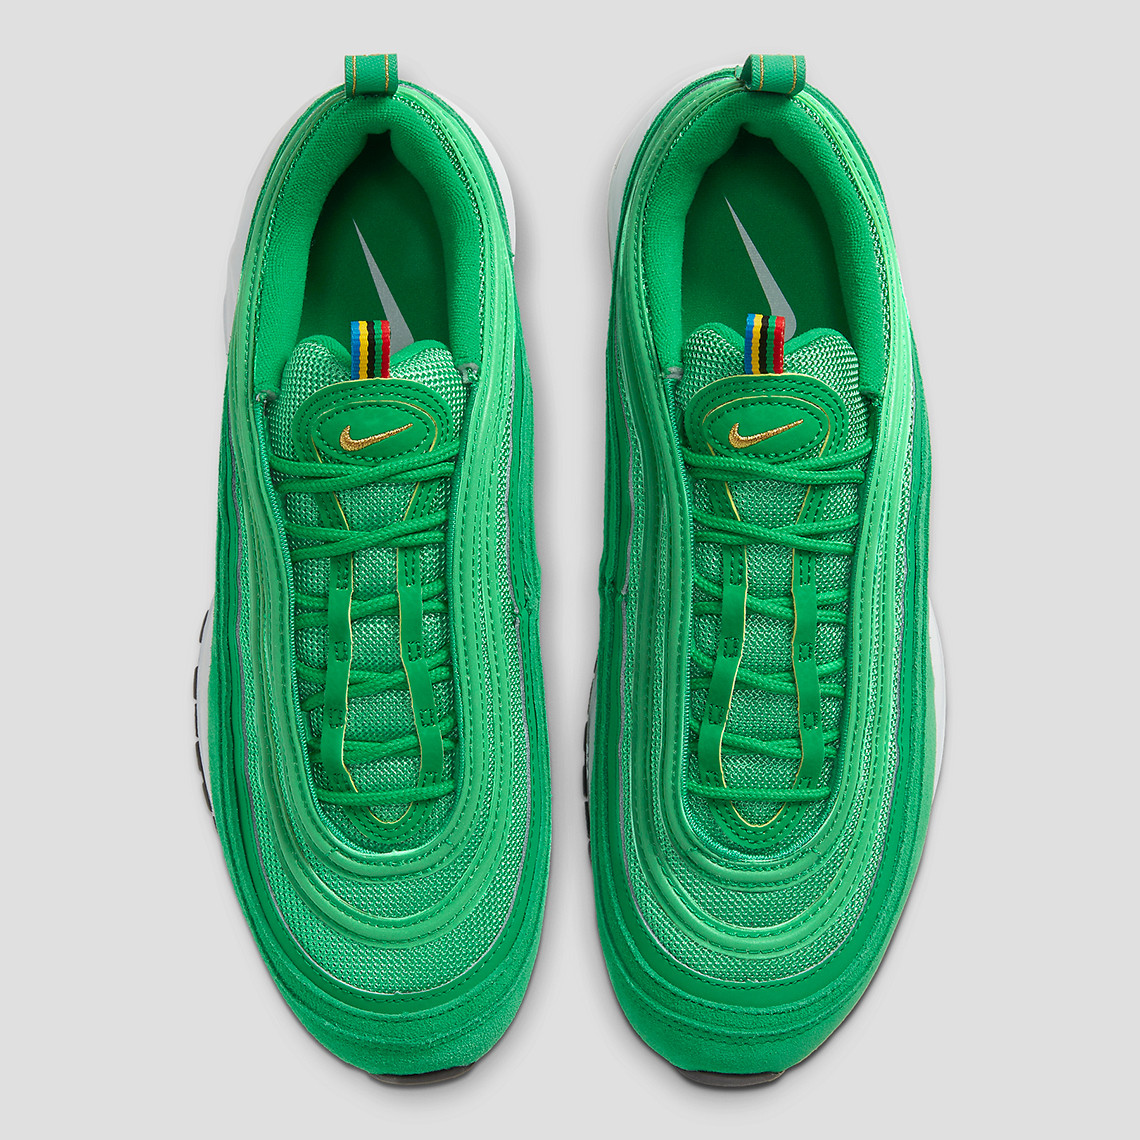 Nike Air Max 97 QS “Lucky Green”